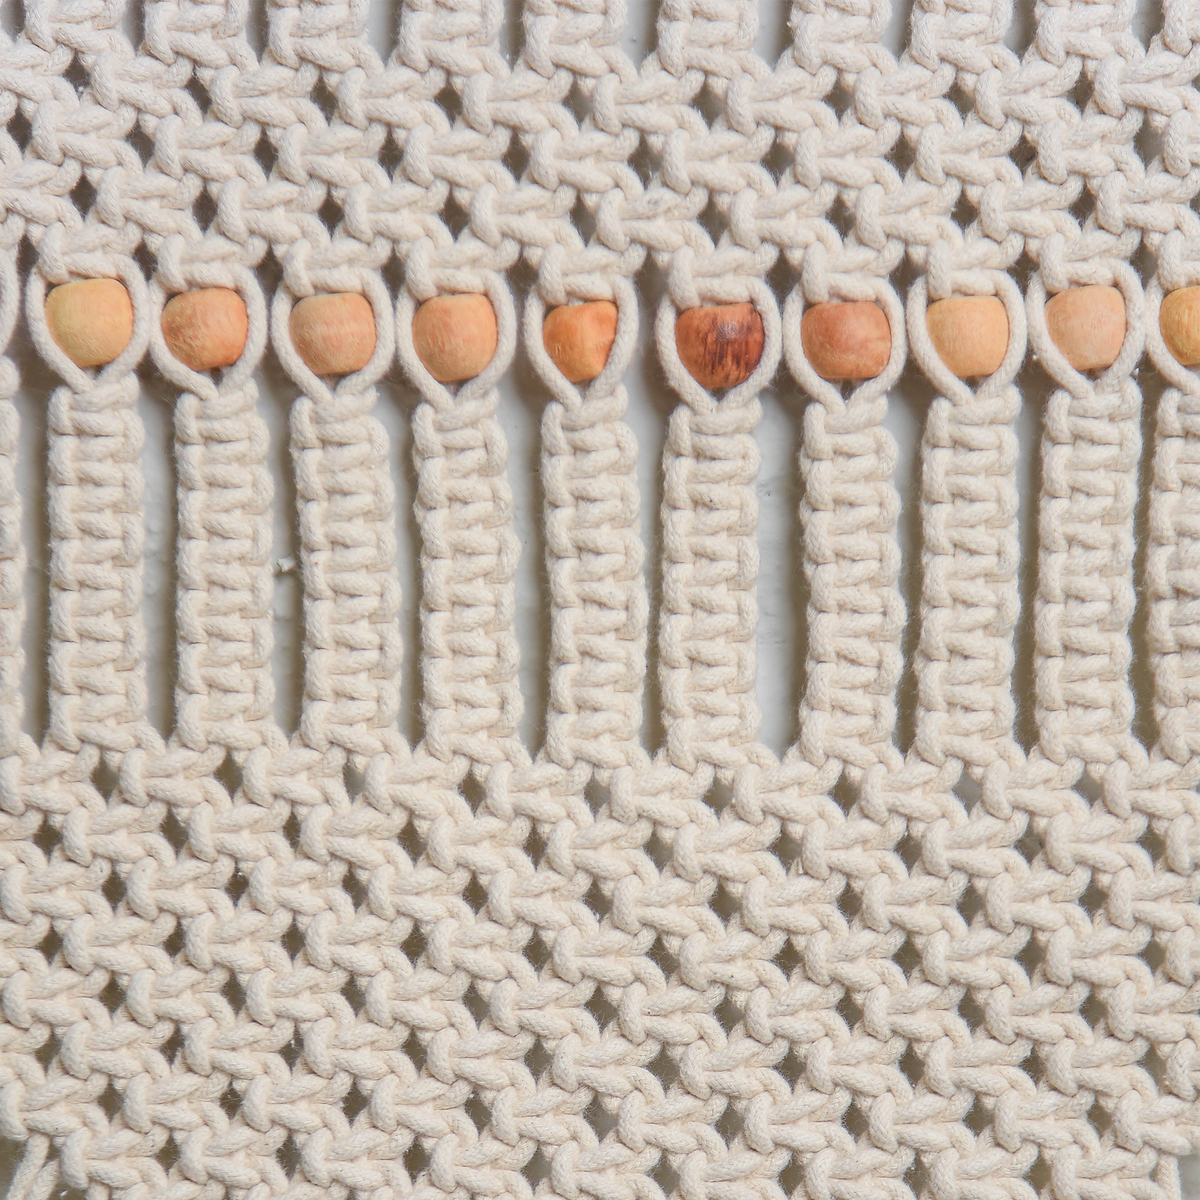 Natural Macrame Wooden Beads Wall Hanging - Sashaaworld